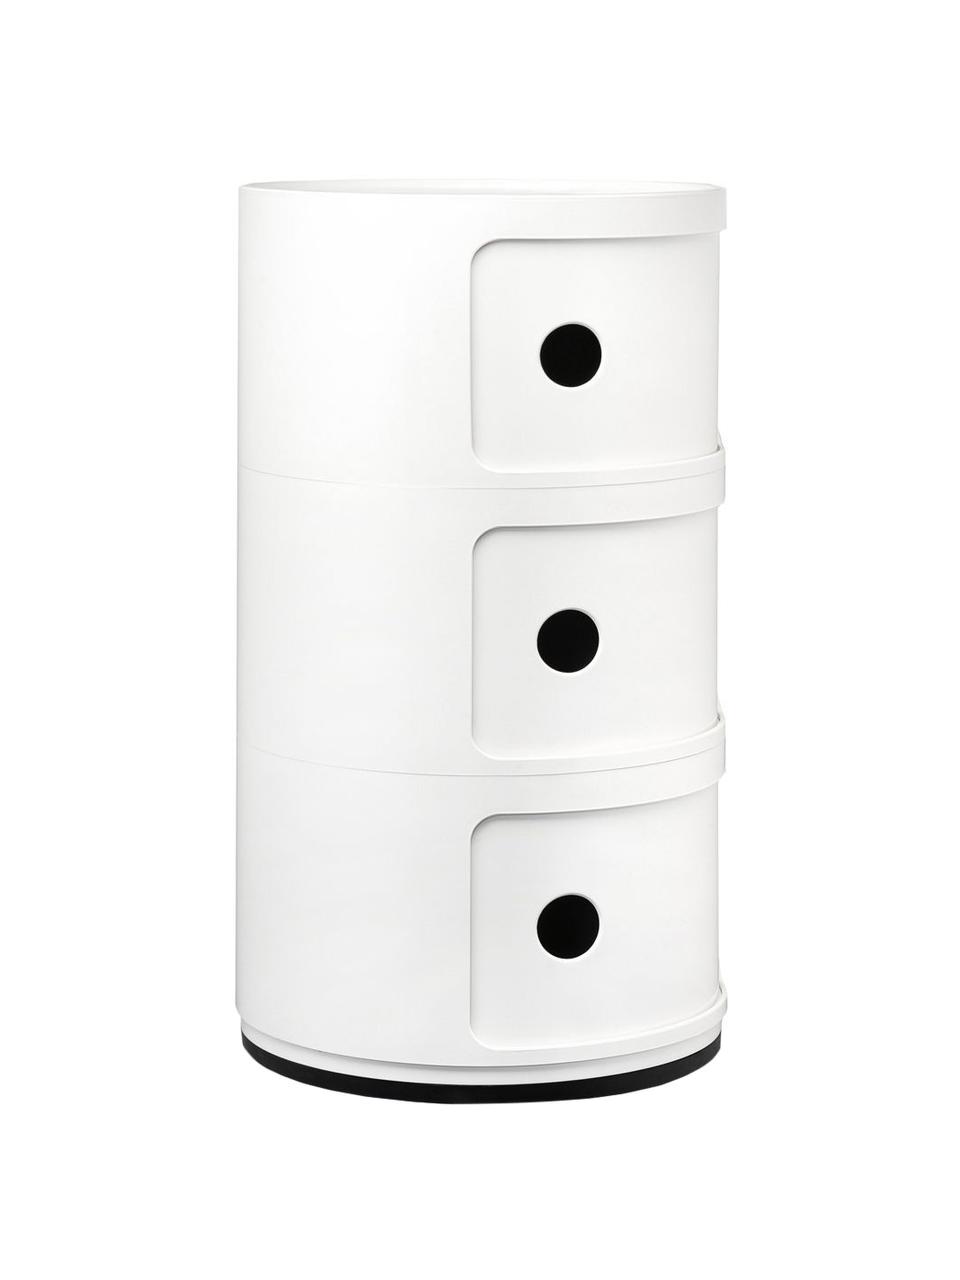 Design Container Componibili 3 Modules in Weiß, Kunststoff (ABS), lackiert, Greenguard-zertifiziert, Weiß, hochglanz, Ø 32 x H 59 cm